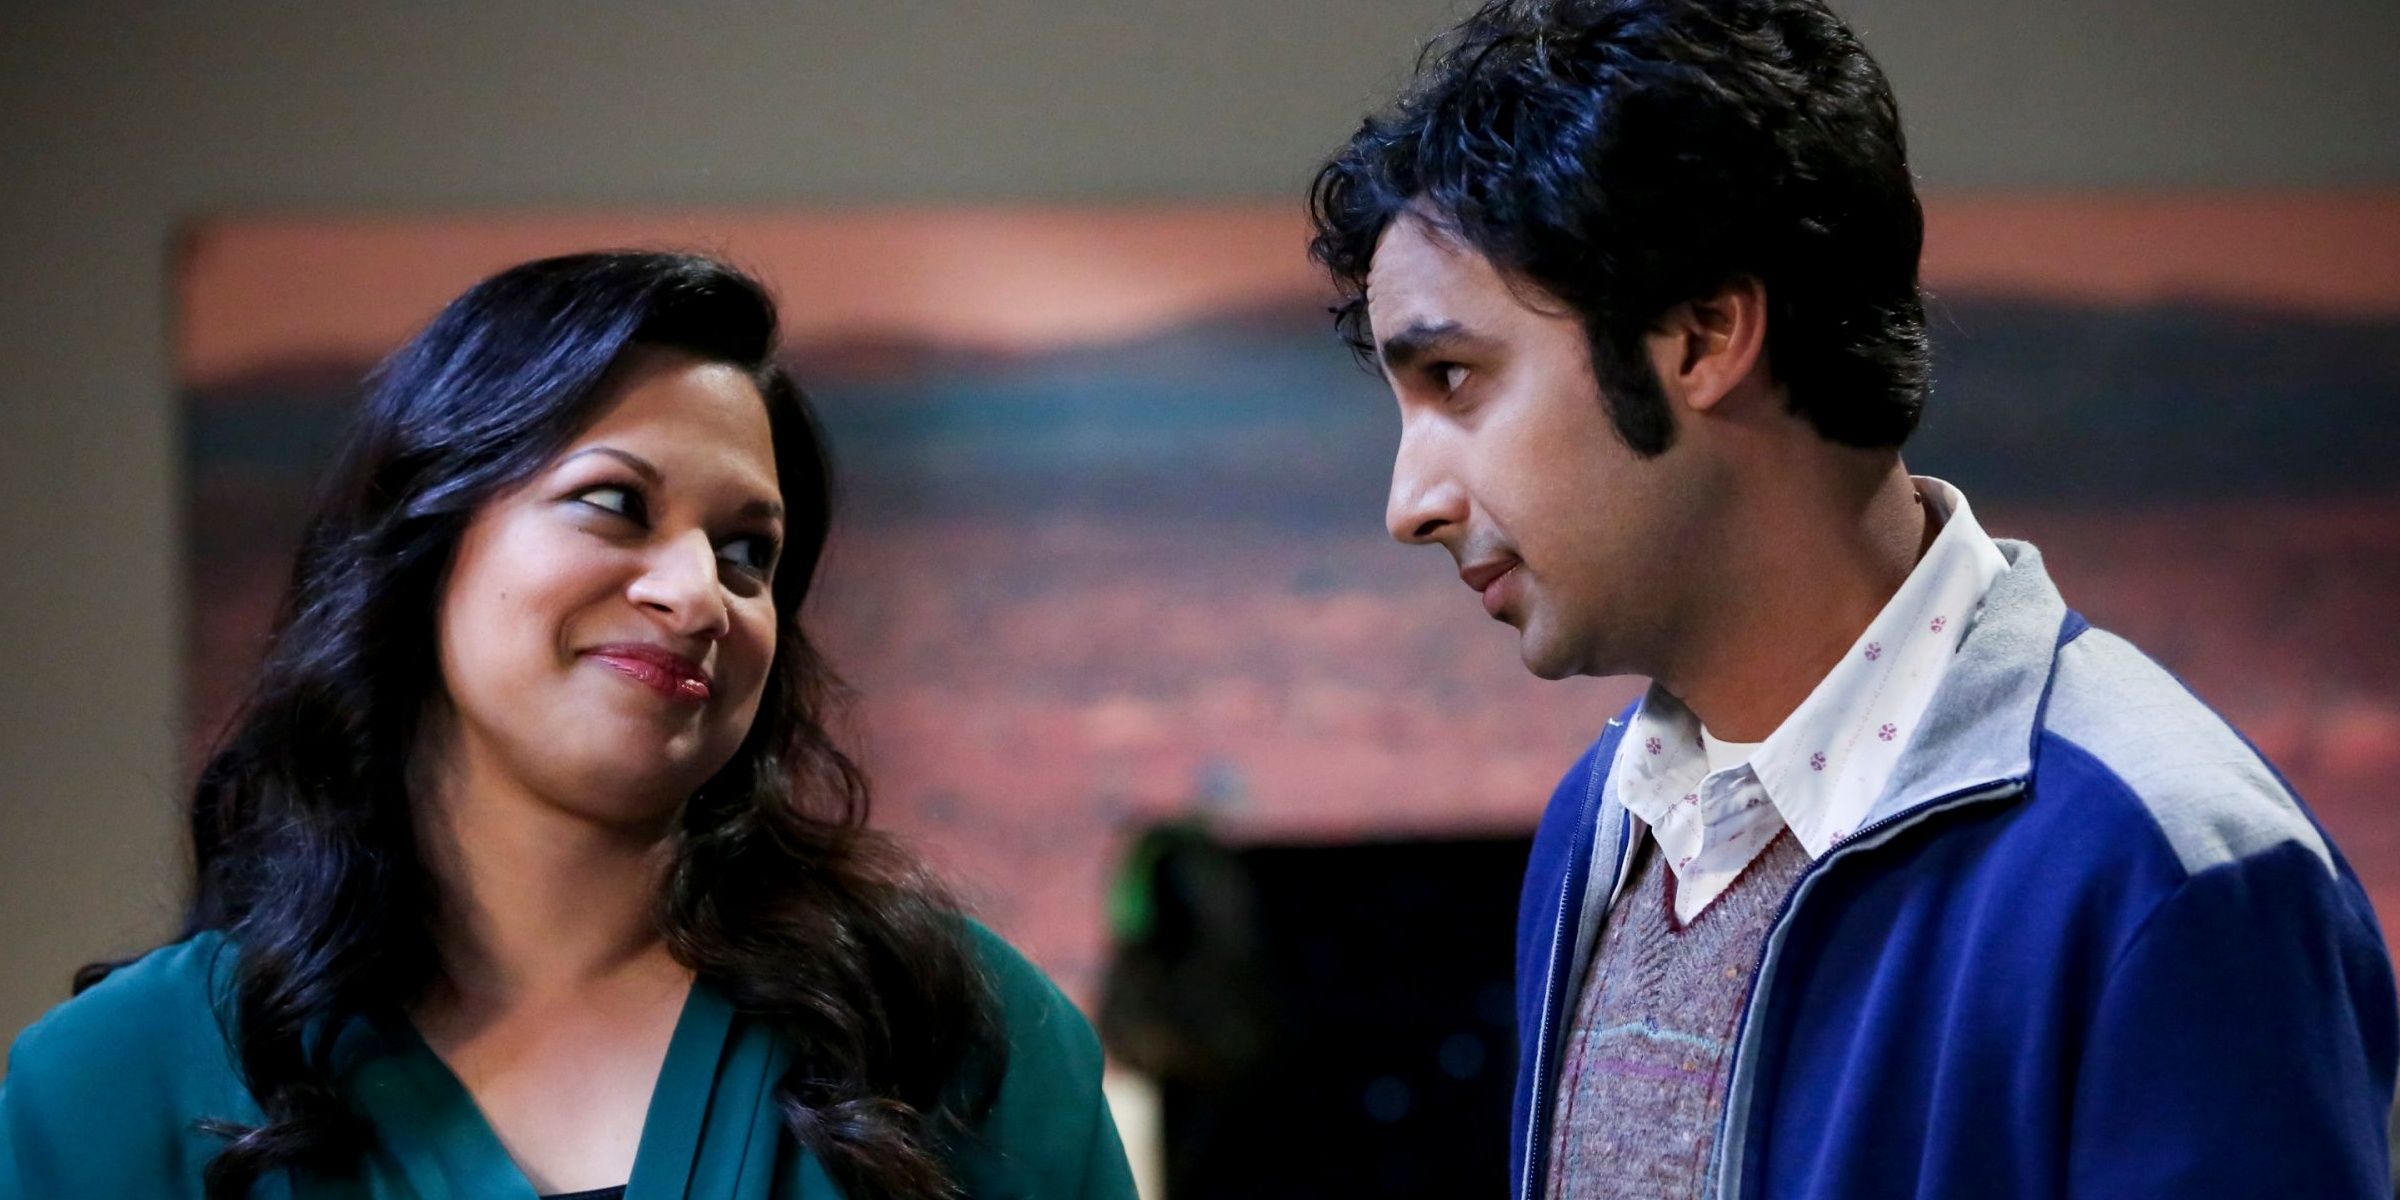 Raj and Anu in The Big Bang TheoryHis dating history